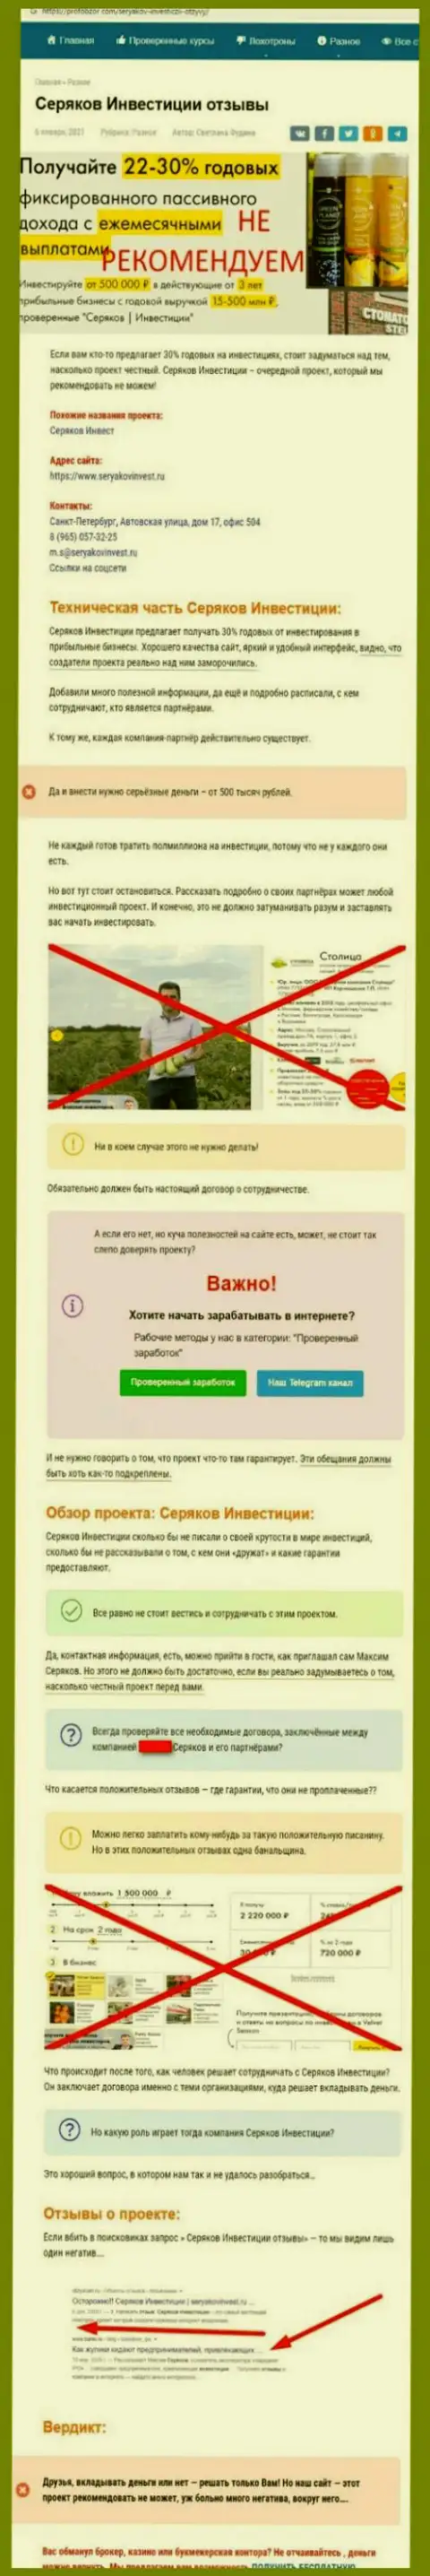 Хитрые уловки от организации SeryakovInvest Ru, обзор неправомерных действий